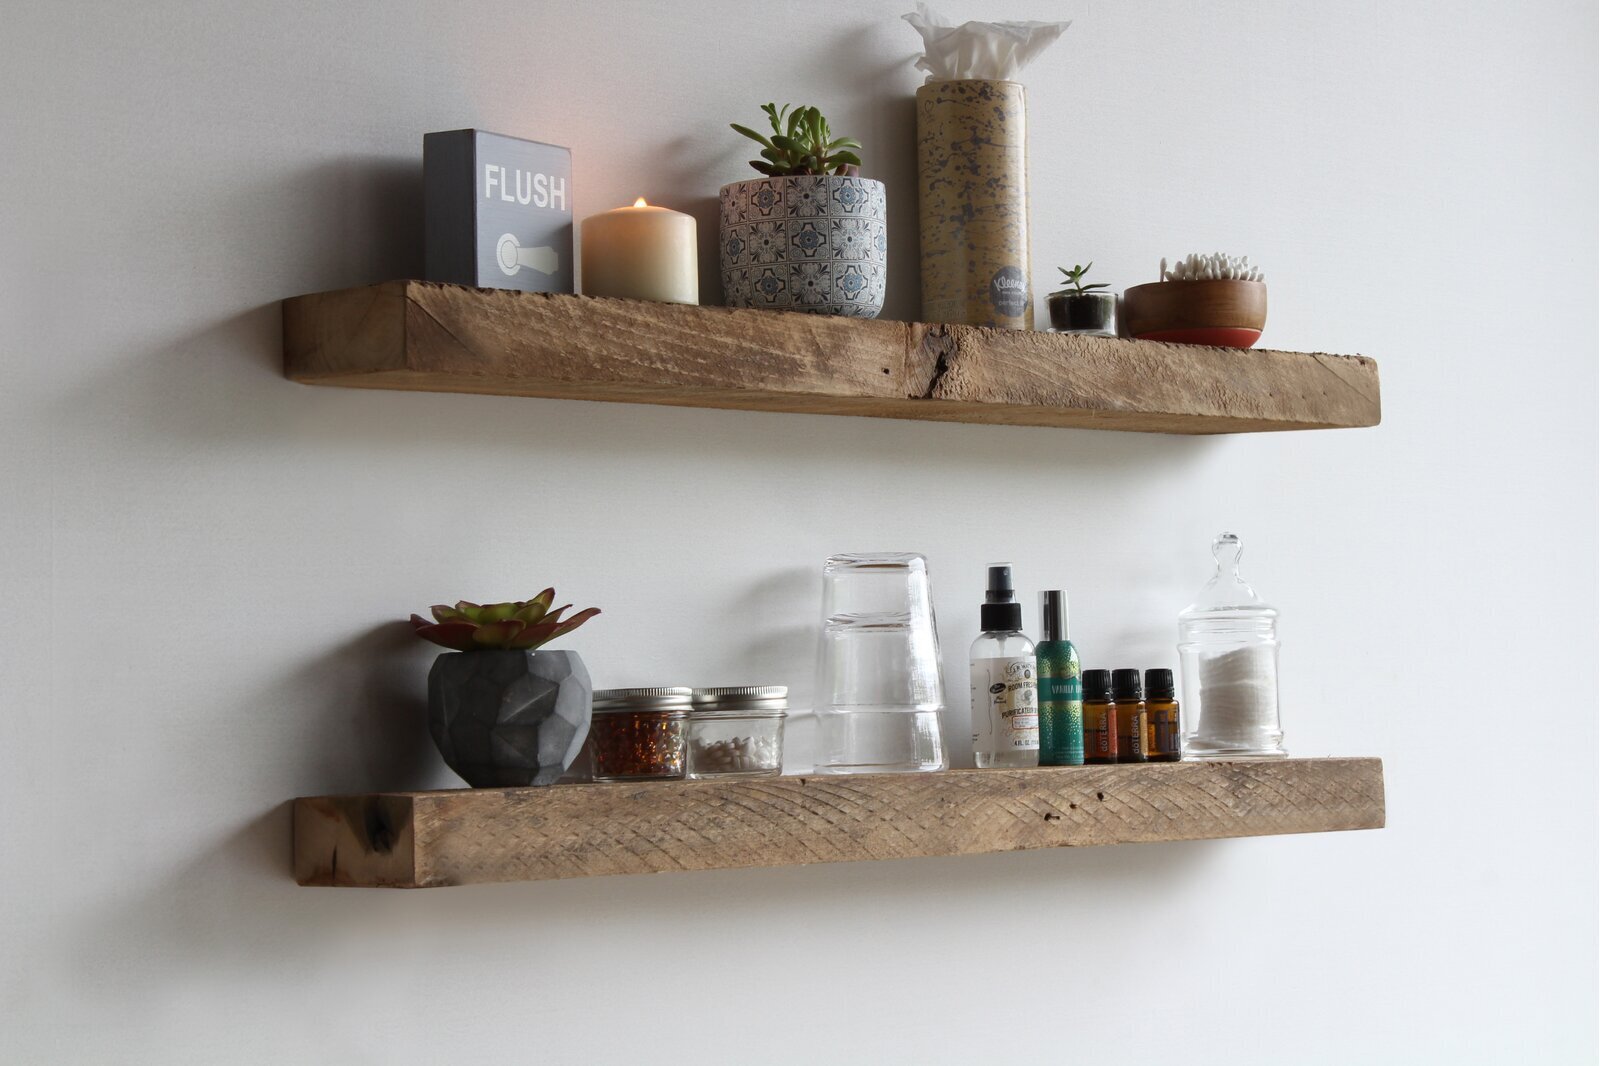 How do you arrange shelves on a wall?